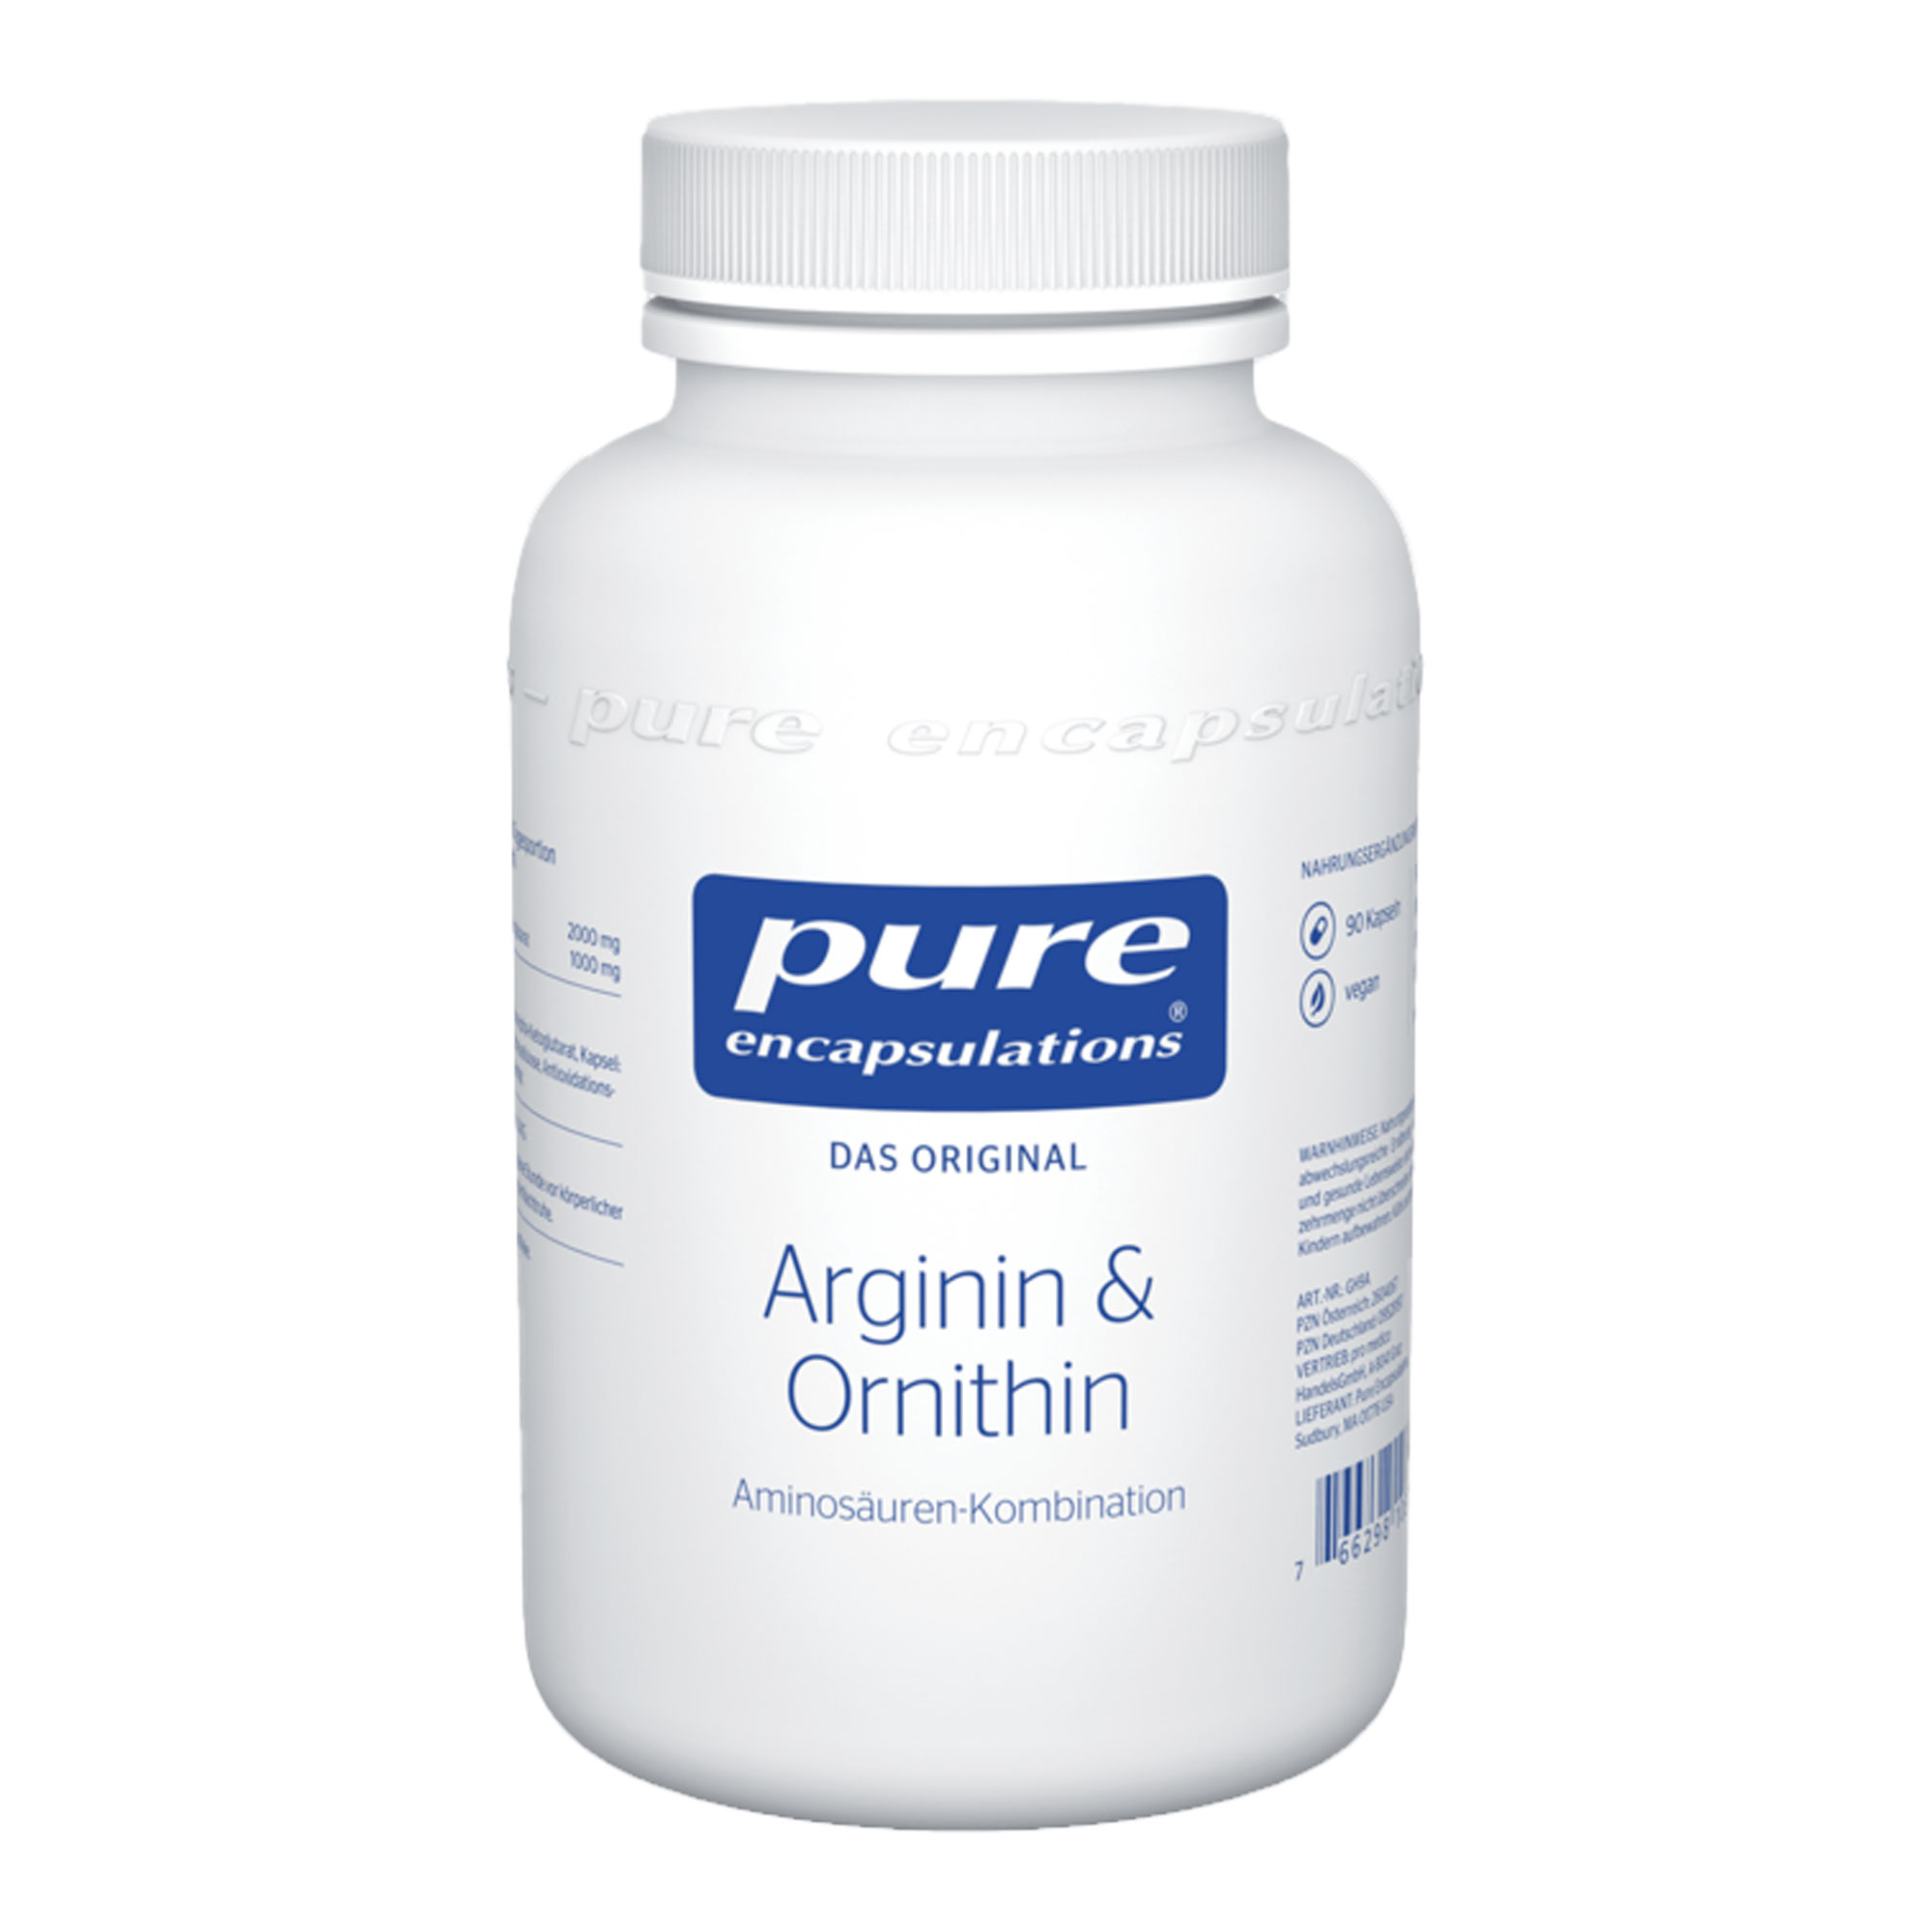 Nahrungsergänzungsmittel mit Arginin und Orthinin. Besonders geeignet bei intensivem Training.